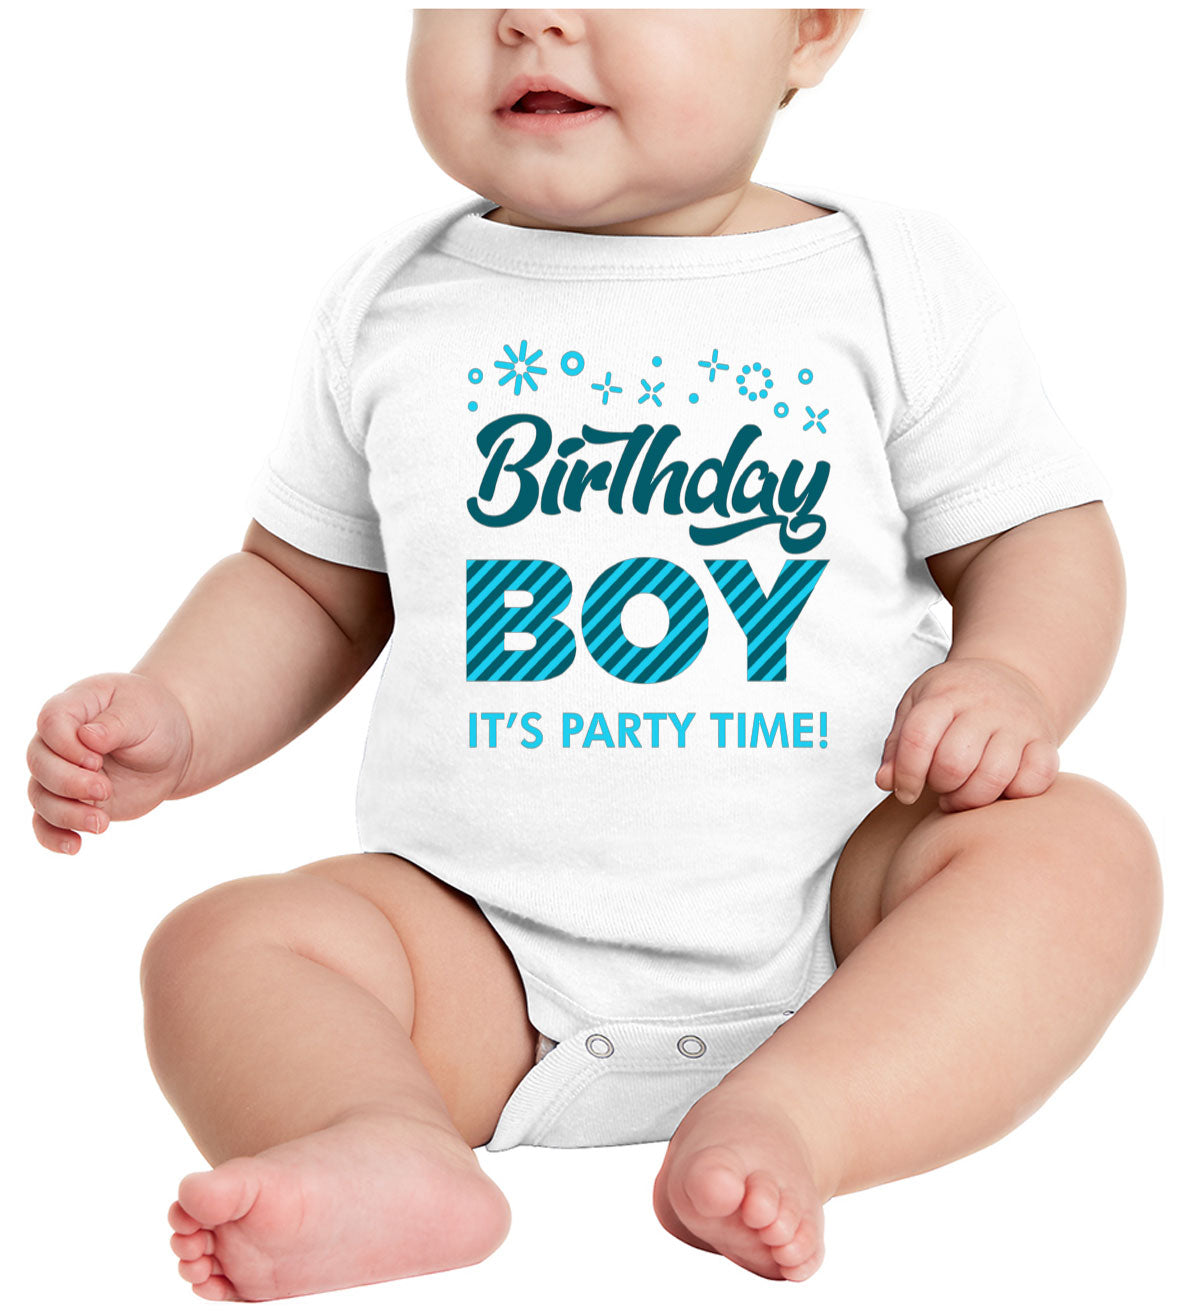 Birthday Boy Baby Onesie